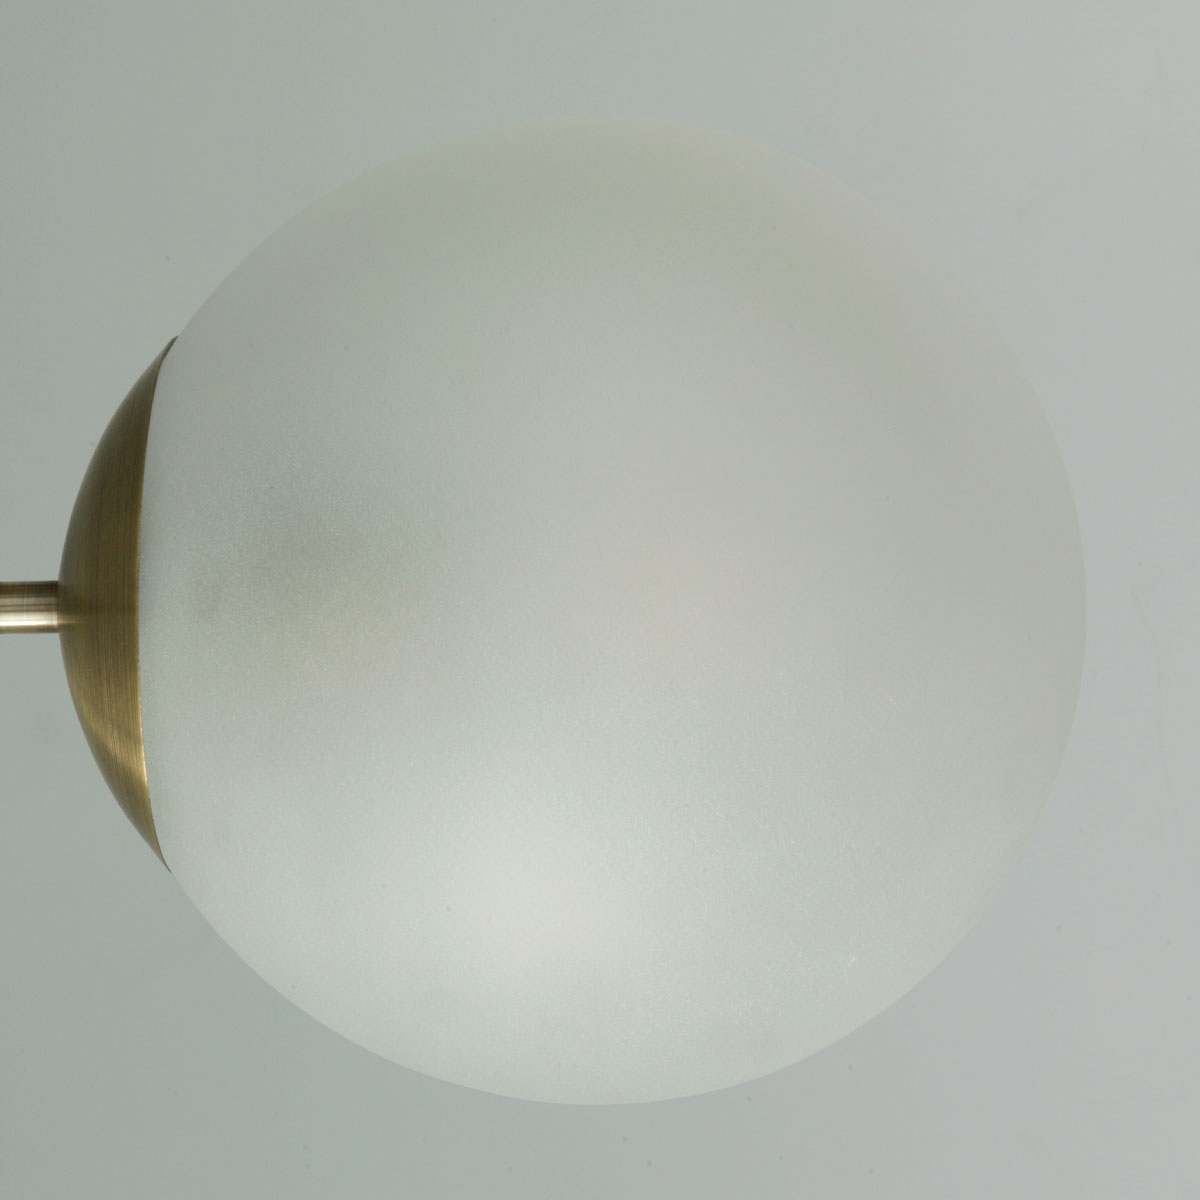 6-armiger Glaskugel-Deckenleuchter, farbig oder klar Ø 85 cm: Matt-weißes Glas (sandgestrahlt), Messing